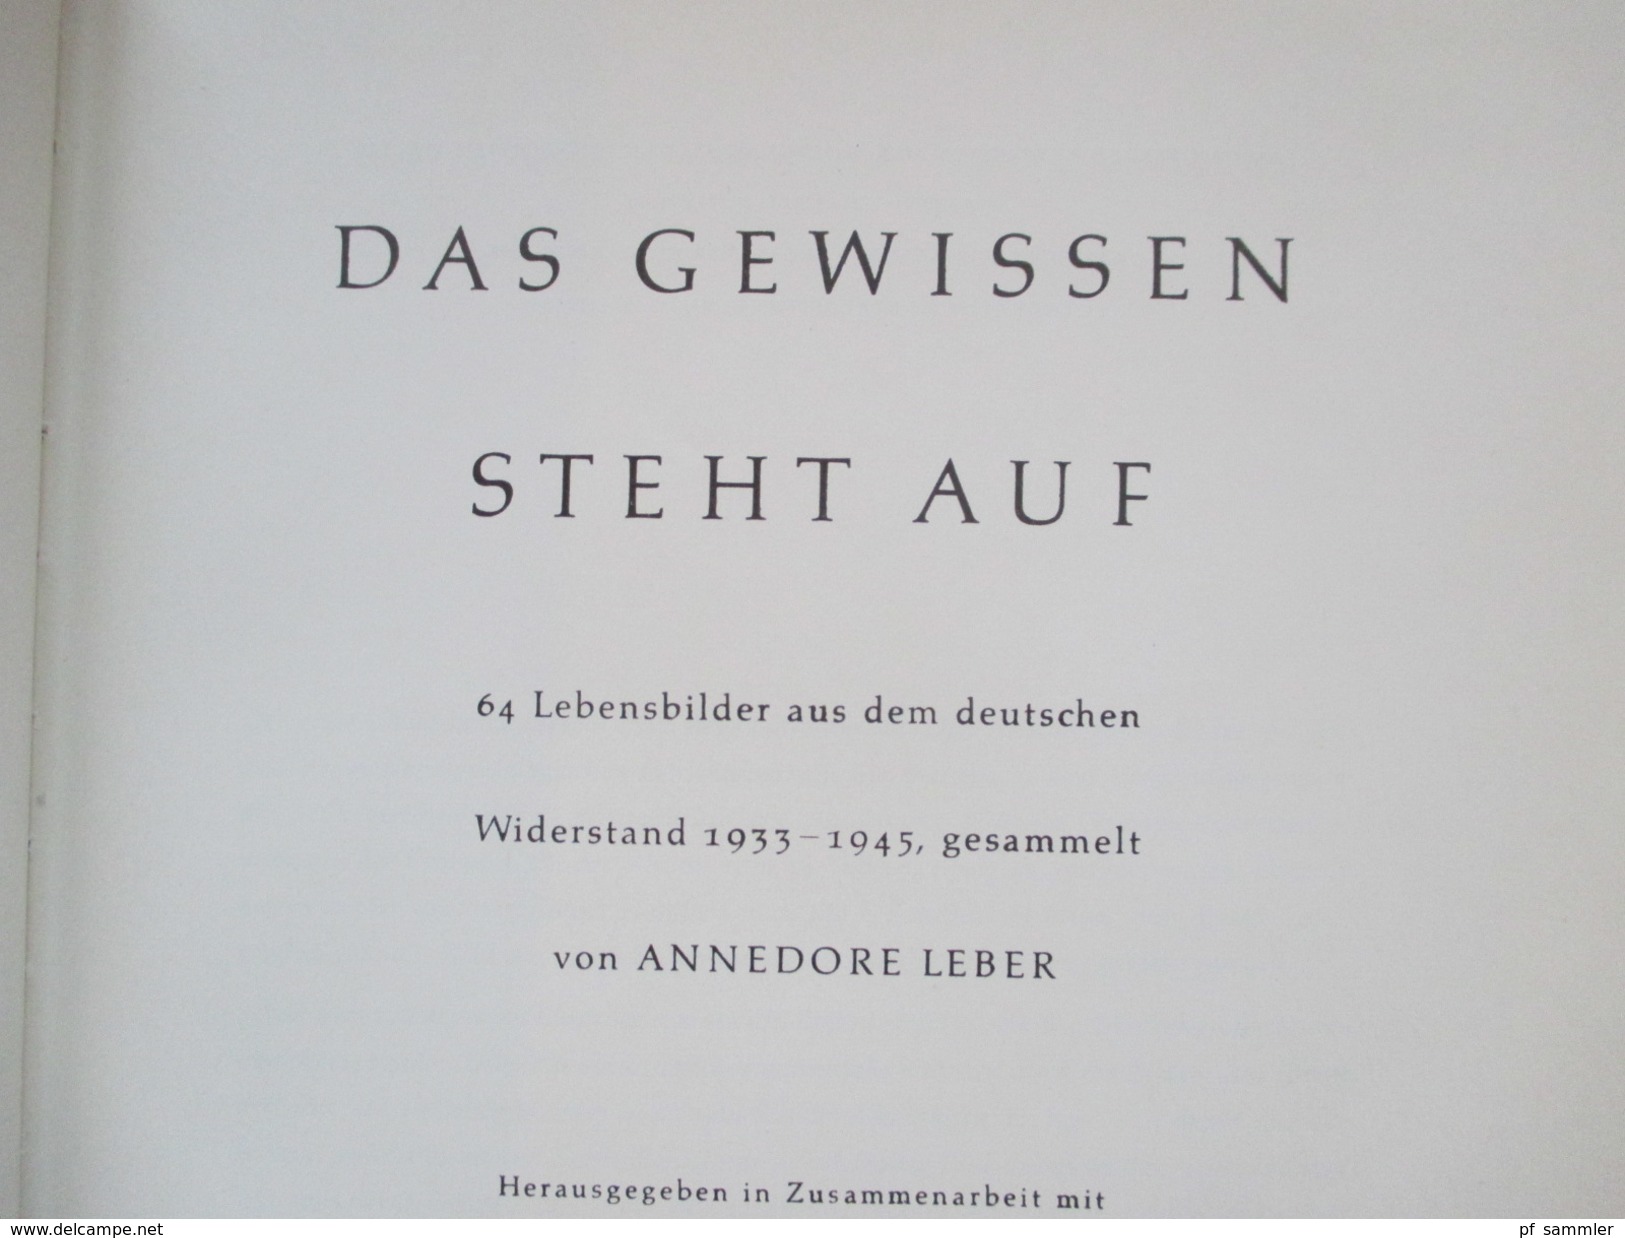 Das Gewissen Steht Auf! 64 Lebensbilder Aus Dem Deutschen Widerstand 1933 - 1945. Mosaikverlag 1956 - Contemporary Politics